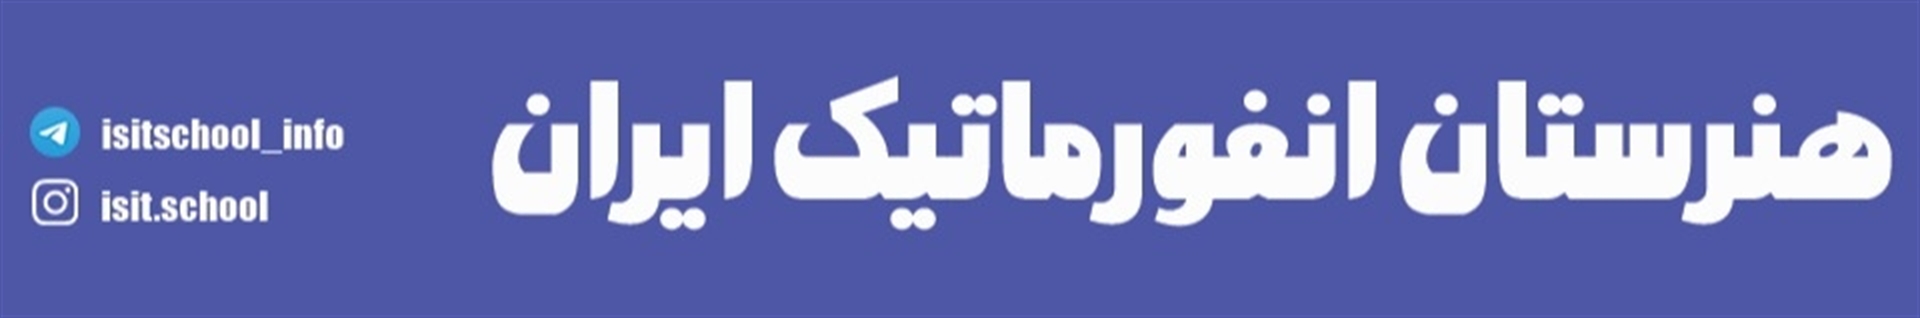 هنرستان انفورماتیک ایران